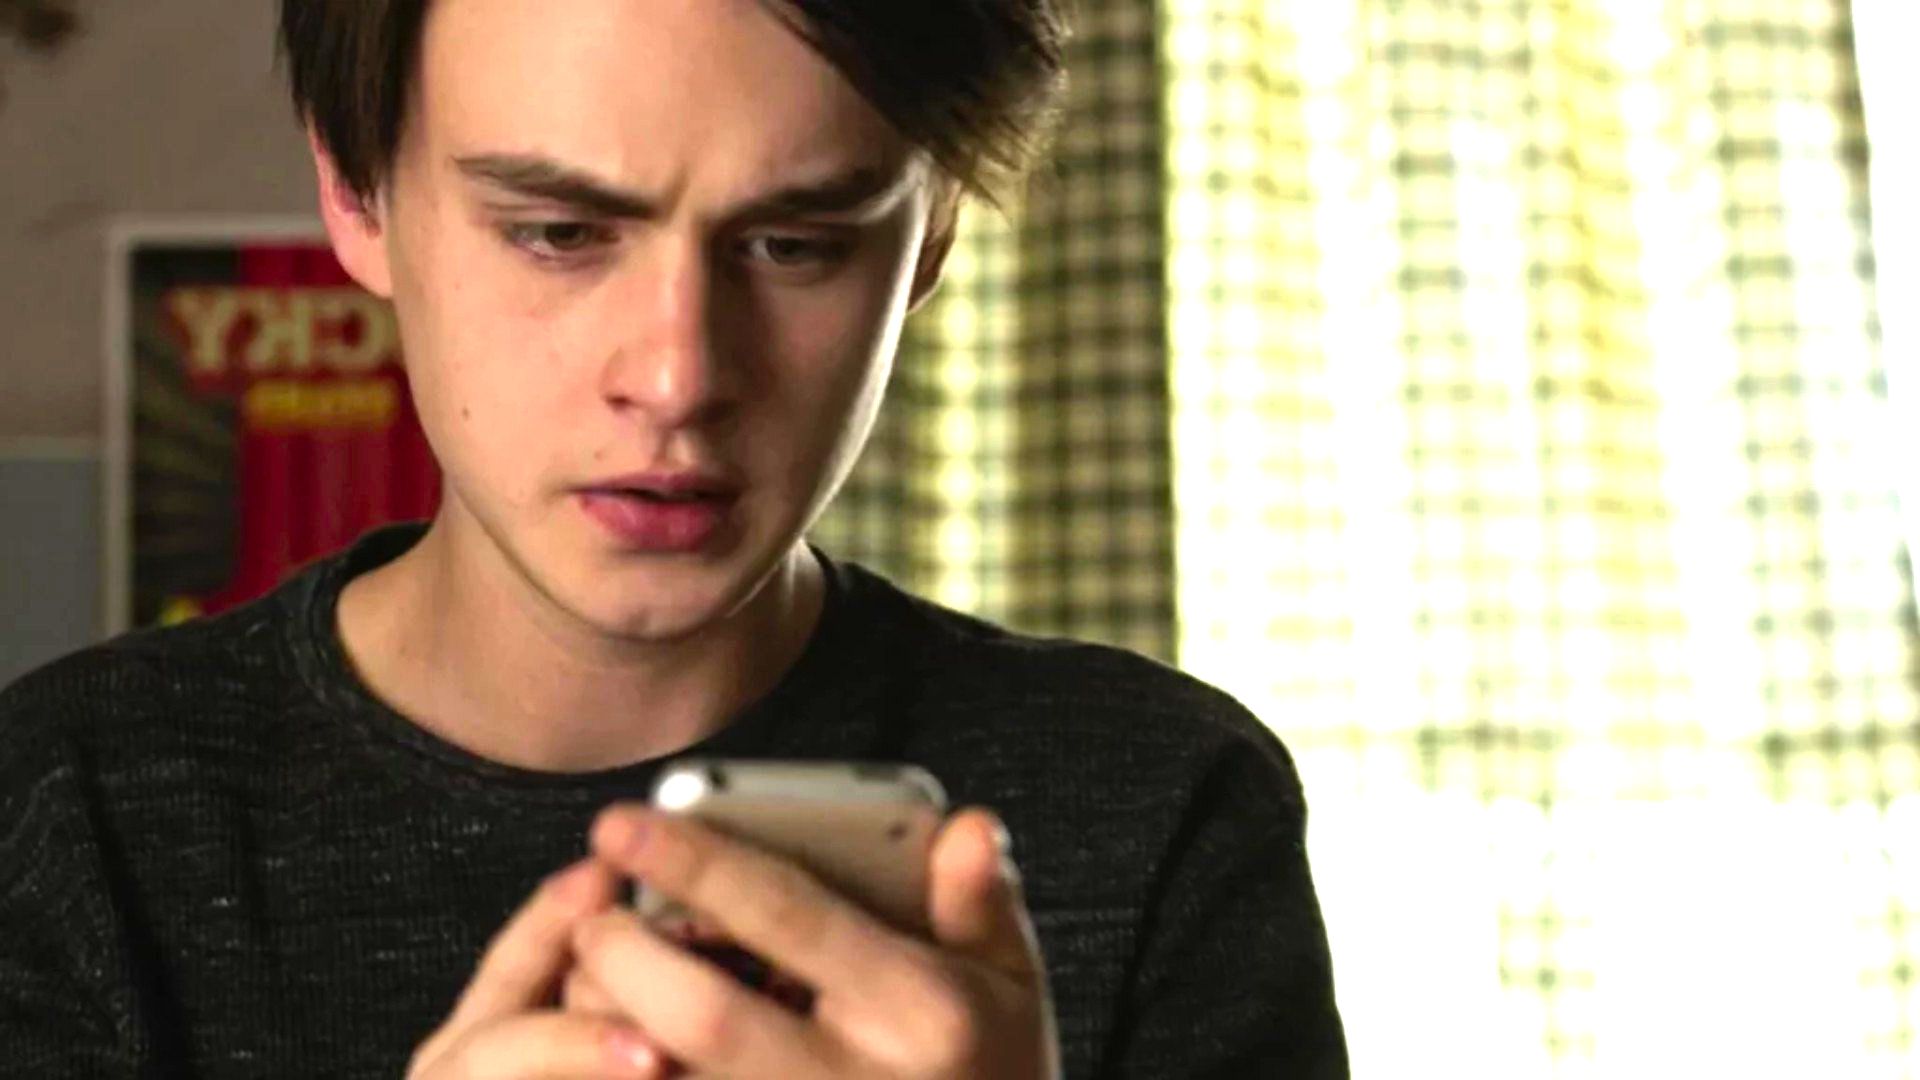 cena do filme O telefone do Sr Harrington mostra jovem olhando o celular